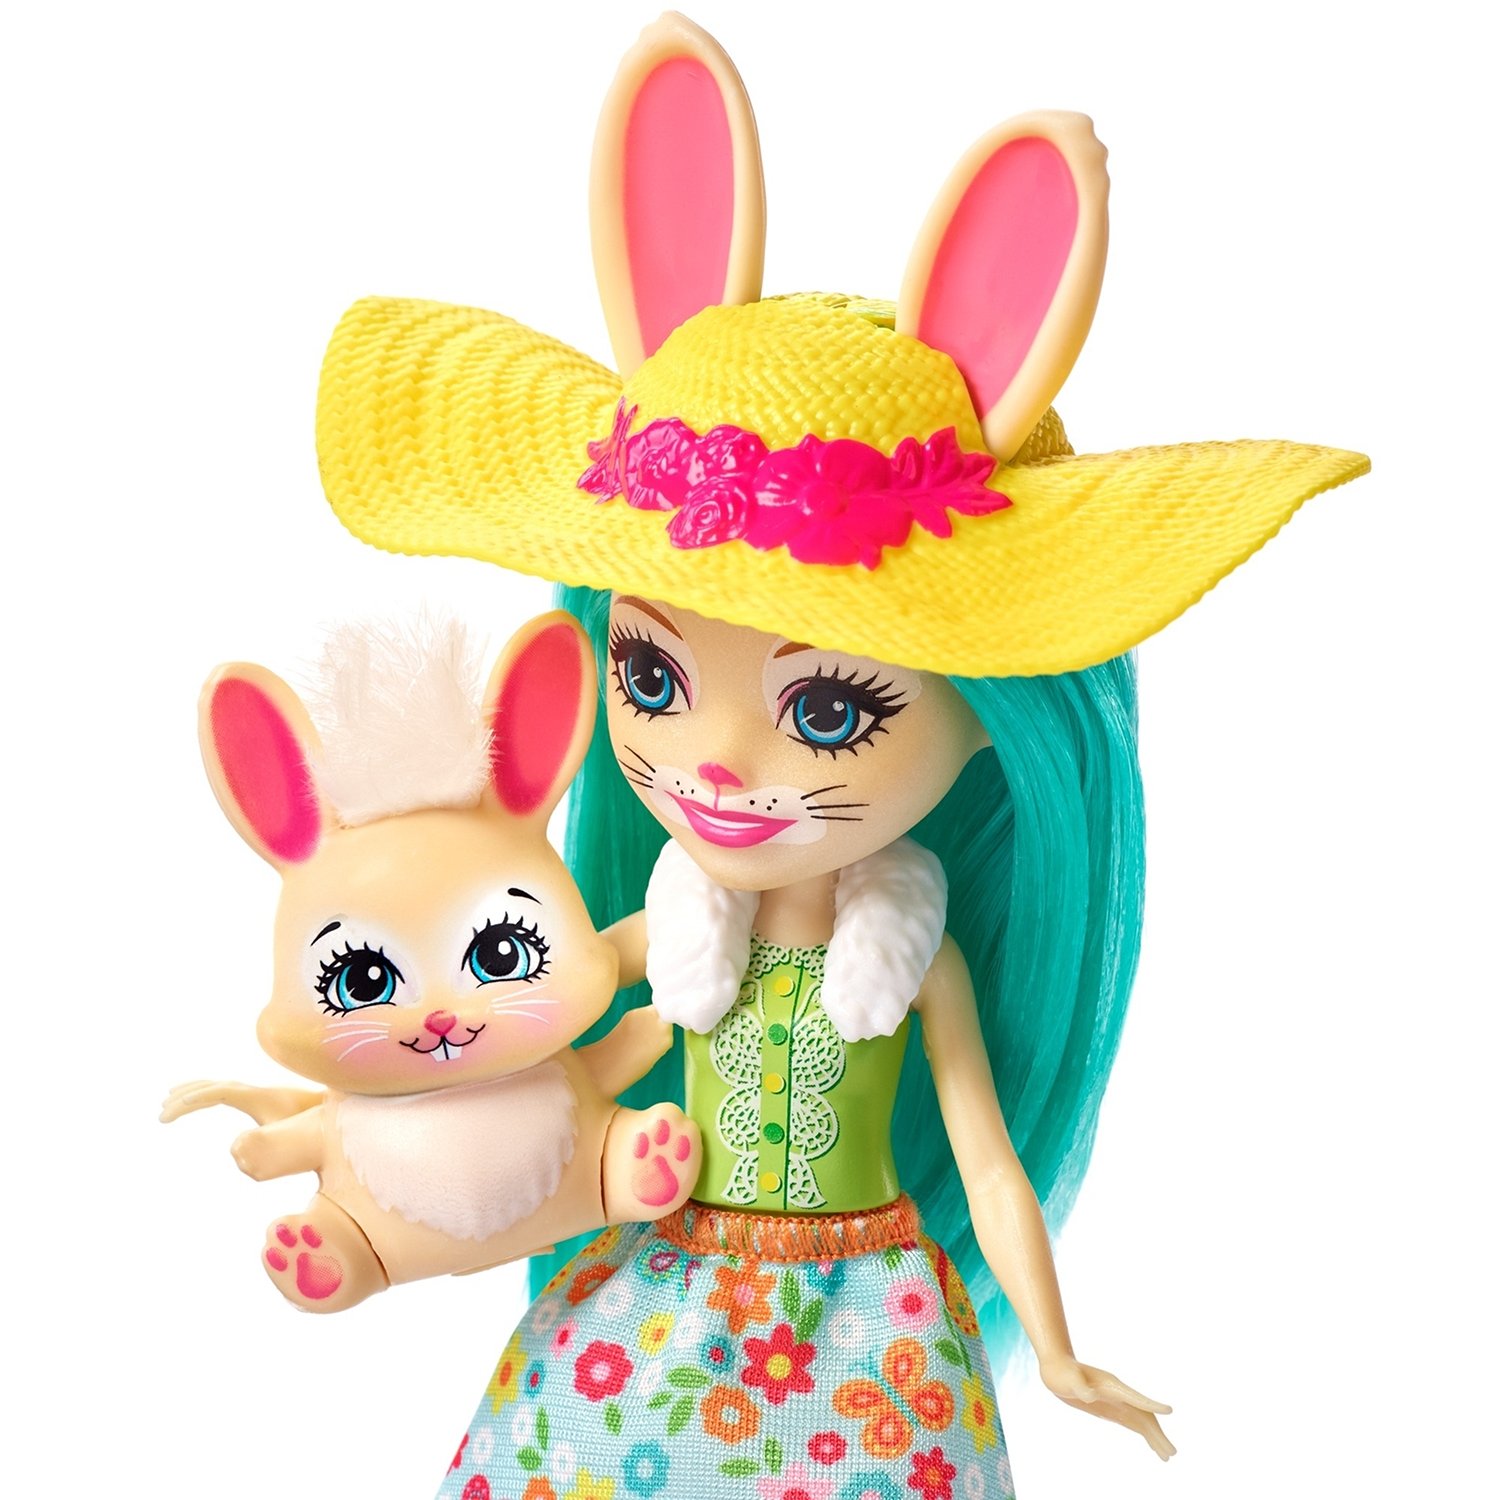 Набор игровой Enchantimals кукла Бри Кроля с аксессуарами GJX33